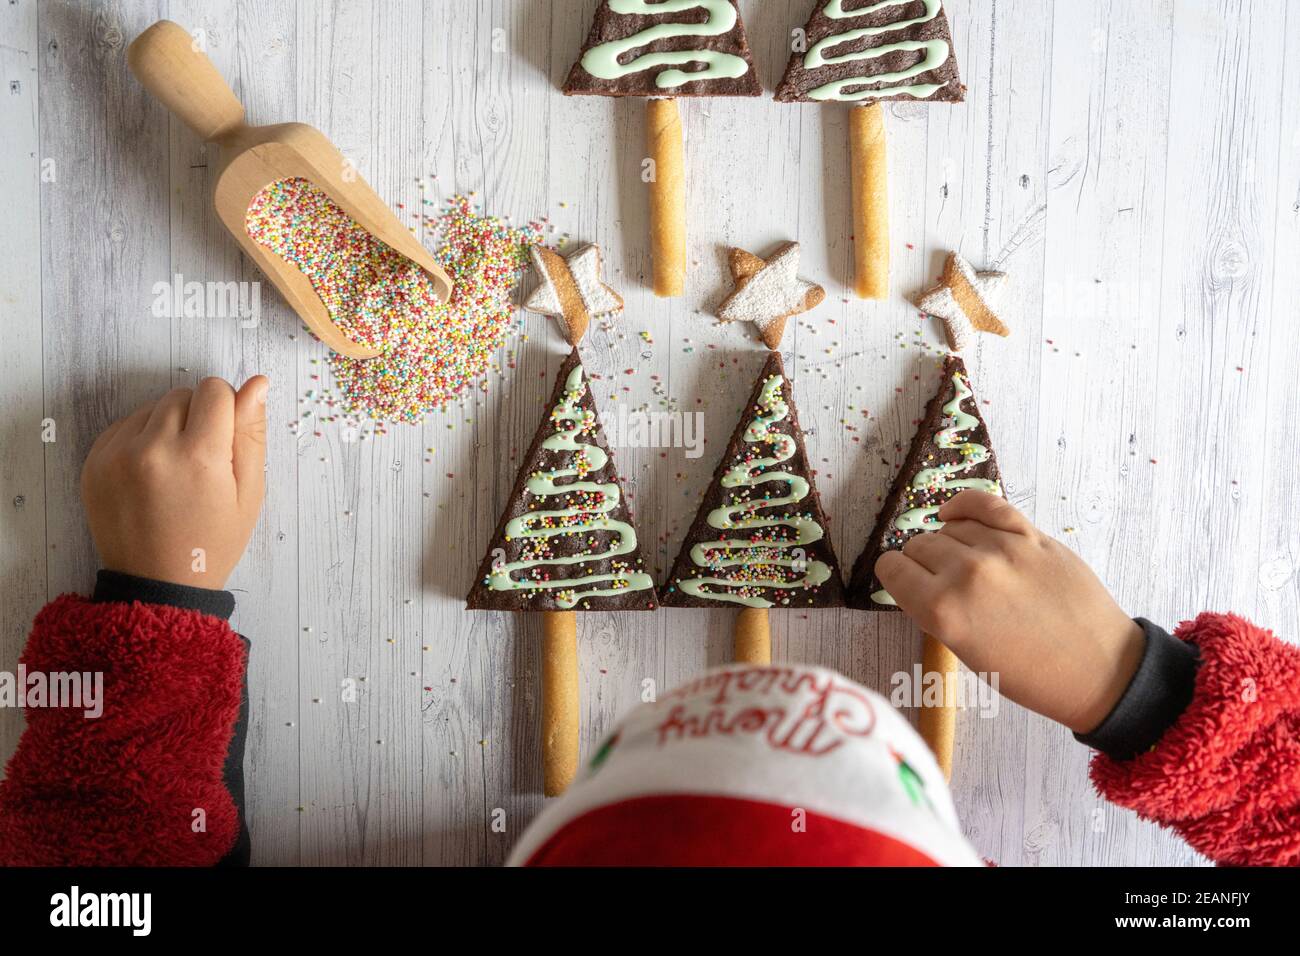 Vista aerea del bambino piccolo con cappello di Santa che decorano i brownie di cioccolato fatti in casa e biscotti a forma di albero di Natale, Italia, Europa Foto Stock